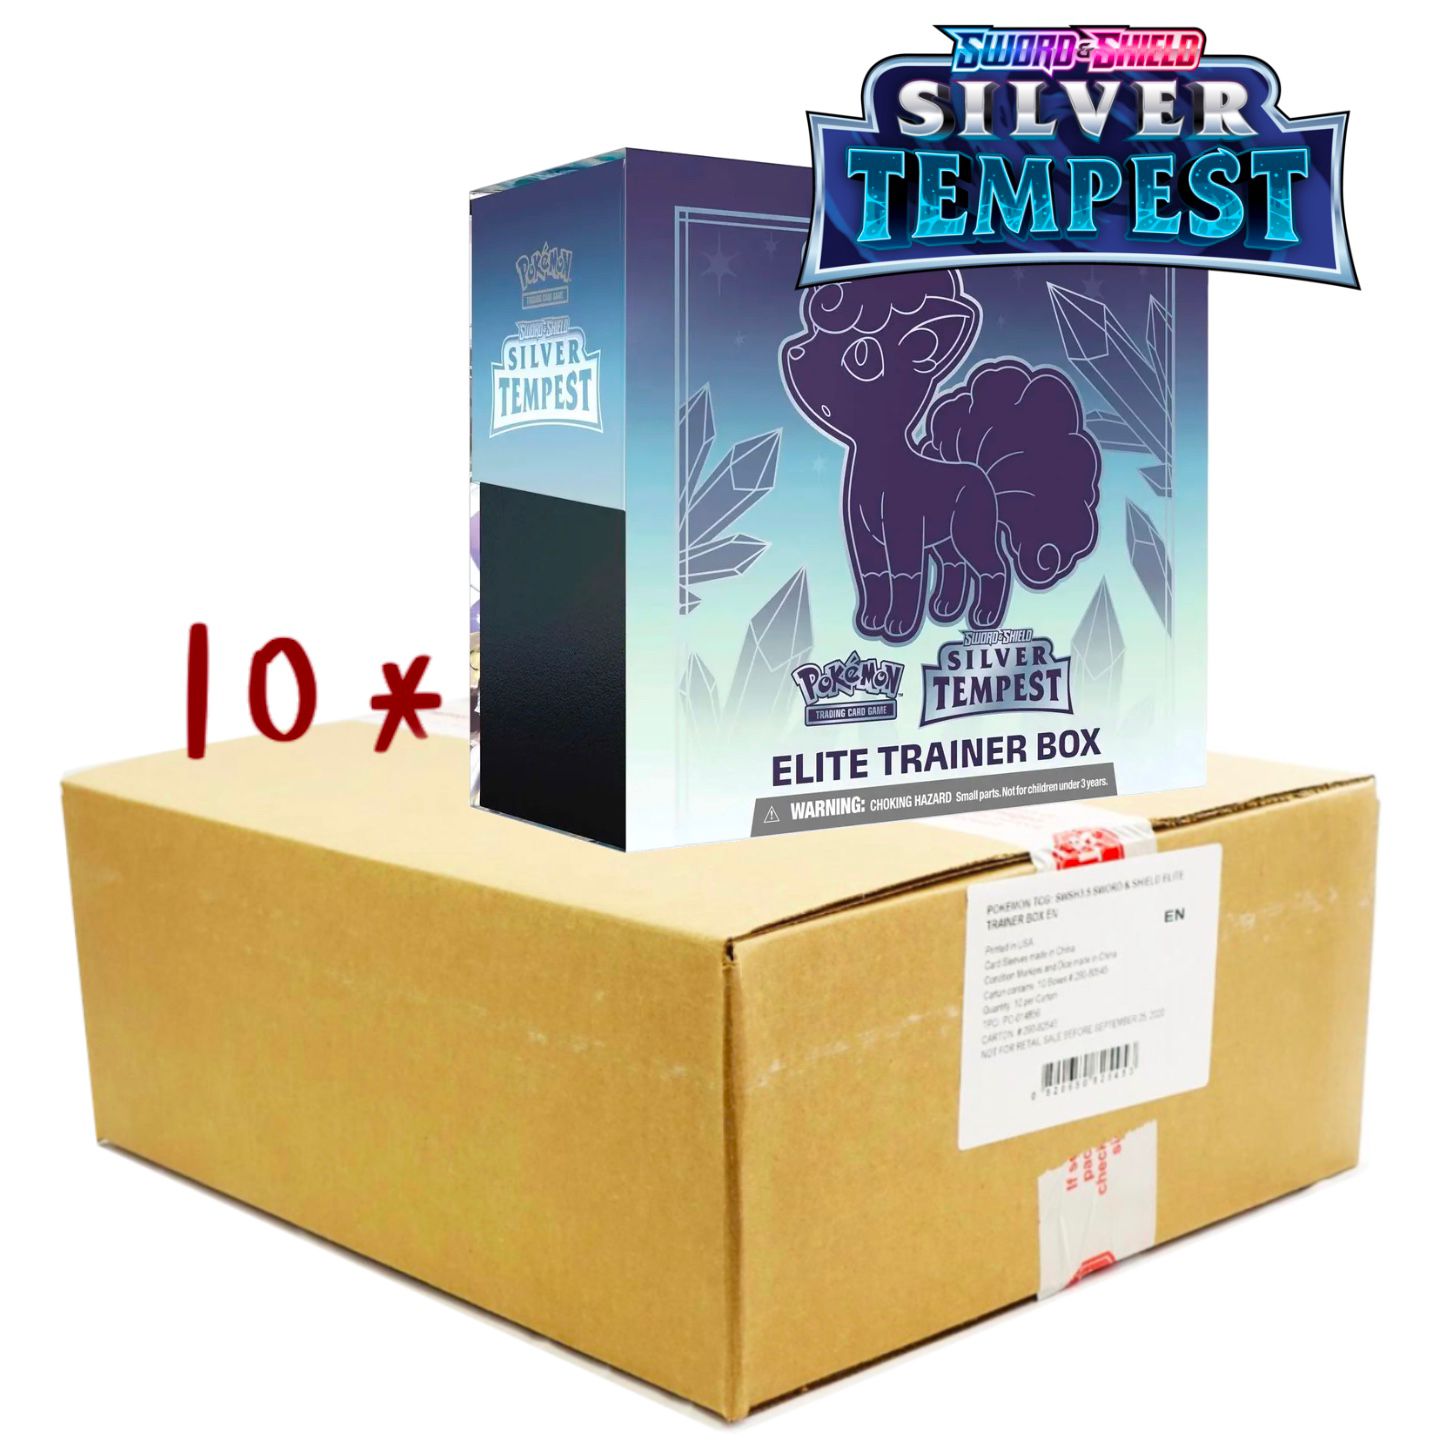 Pokemon Sword & Shield Silver Tempest Booster Box